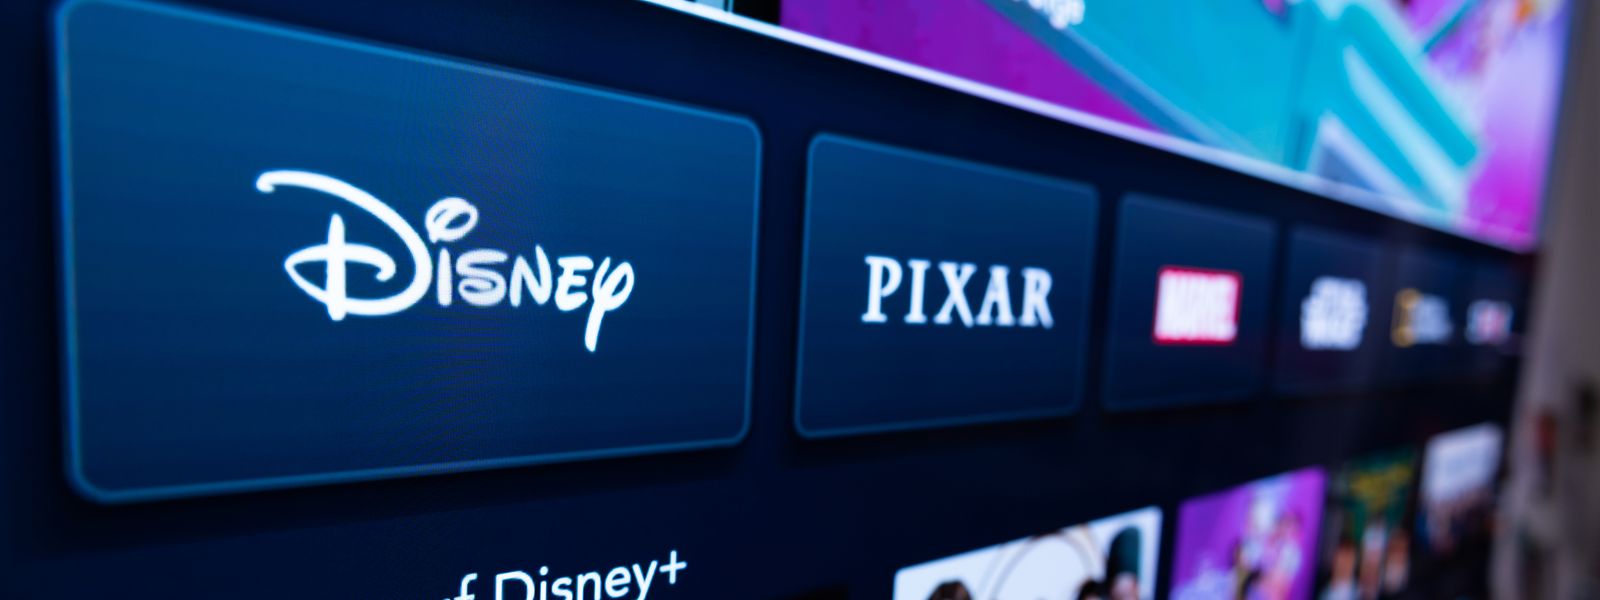 Avec Disney+, le groupe Disney réunit sous un même toit les films classiques de Disney, les succès d'animation de Pixar et de nombreux films d'action en streaming.